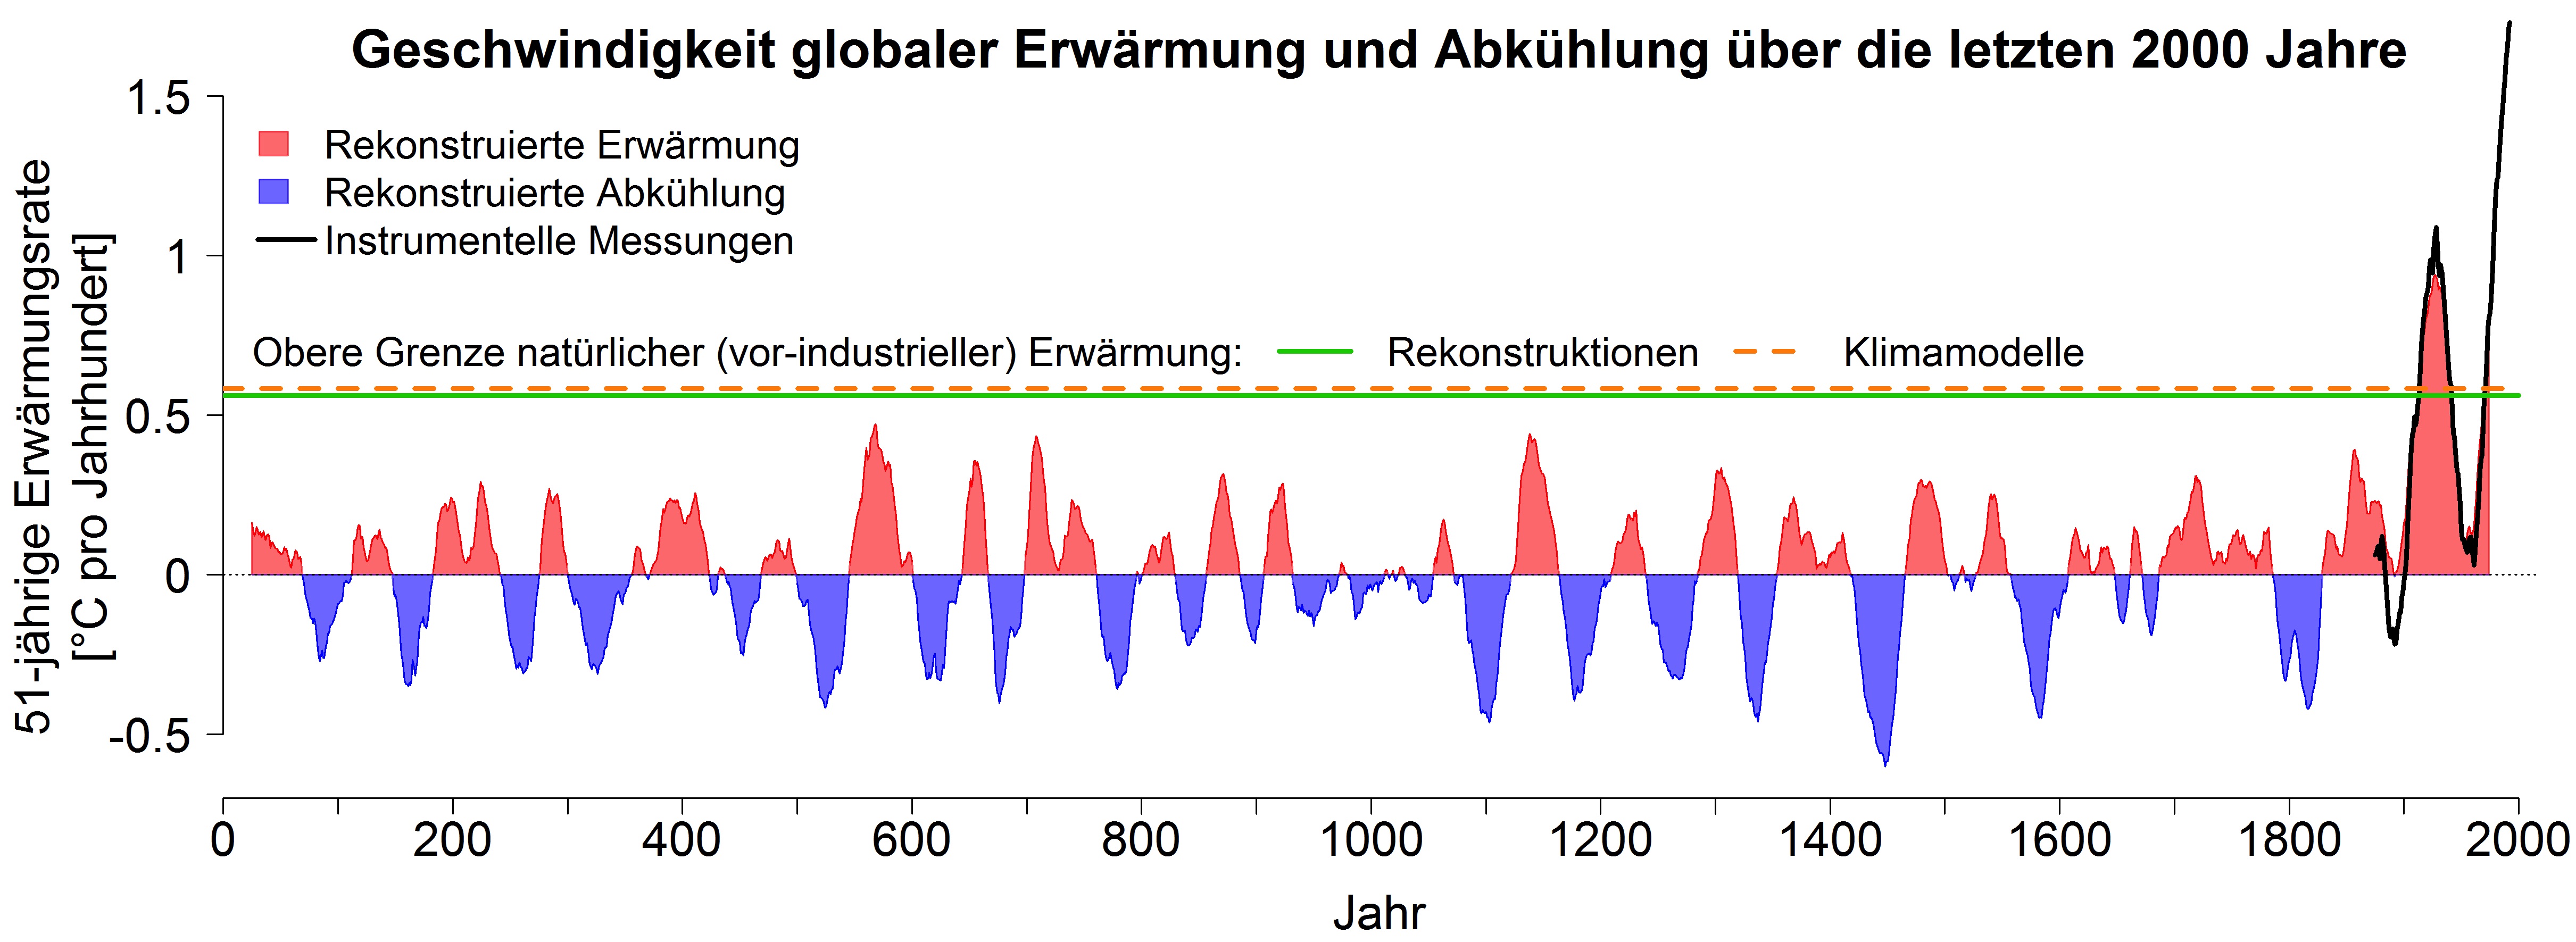 Geschwindigkeit der Erwärmung oder Abkühlung der globalen Mitteltemperatur über die letzten 2000 Jahre. Rot dargestellt sind Zeiträume (jeweils über 51 Jahre), in denen die rekonstruierten Temperaturen zugenommen haben. In blau dargestellten Perioden nahmen die globalen Temperaturen ab. Die grüne Linie zeigt, dass die ohne menschlichen Einfluss maximal zu erwartenden Erwärmungsraten bei knapp 0,6 Grad pro Jahrhundert liegen. Klimamodelle (orange gestrichelte Linie) können diese natürliche Obergrenze sehr gut simulieren. Die momentane Erwärmungsgeschwindigkeit liegt mit mehr als 1,7 Grad pro Jahrhundert deutlich über diesen natürlich zu erwartenden Erwärmungsraten und über den Werten aller vorherigen Jahrhunderte. Instrumentelle Messungen seit 1850 (in schwarz) bestätigen diese Zahlen. © Universität Bern